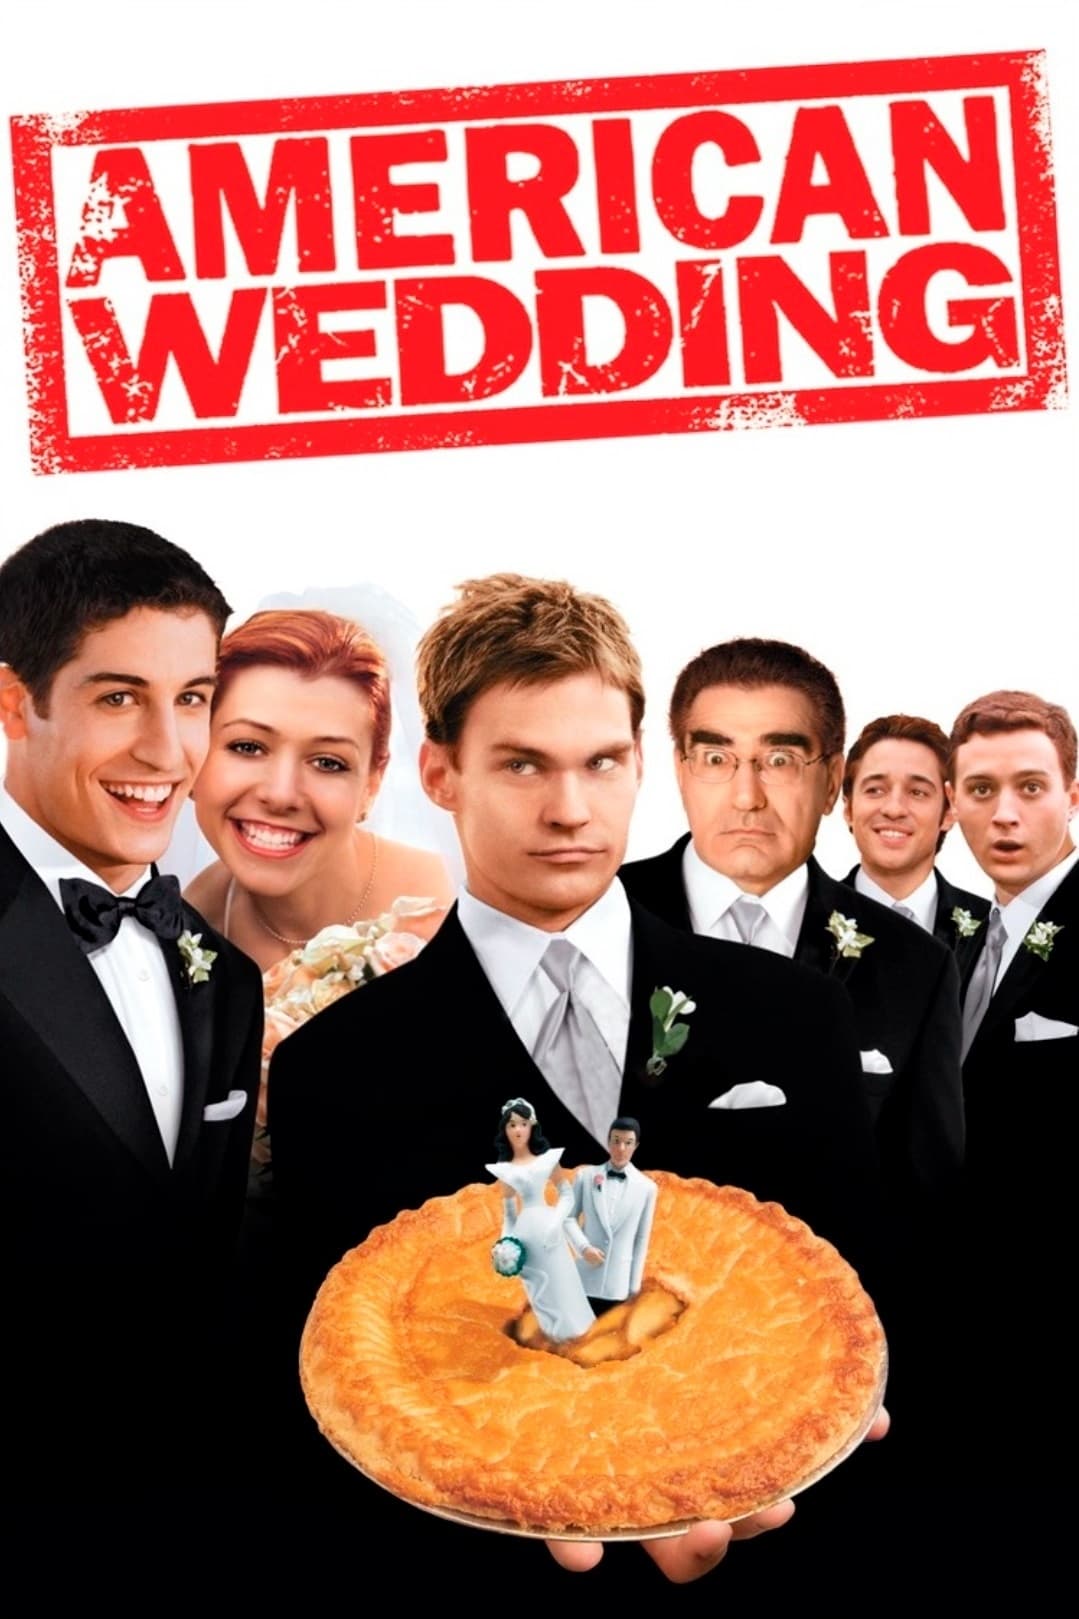 ดูหนังออนไลน์ฟรี American Pie 3: American Wedding